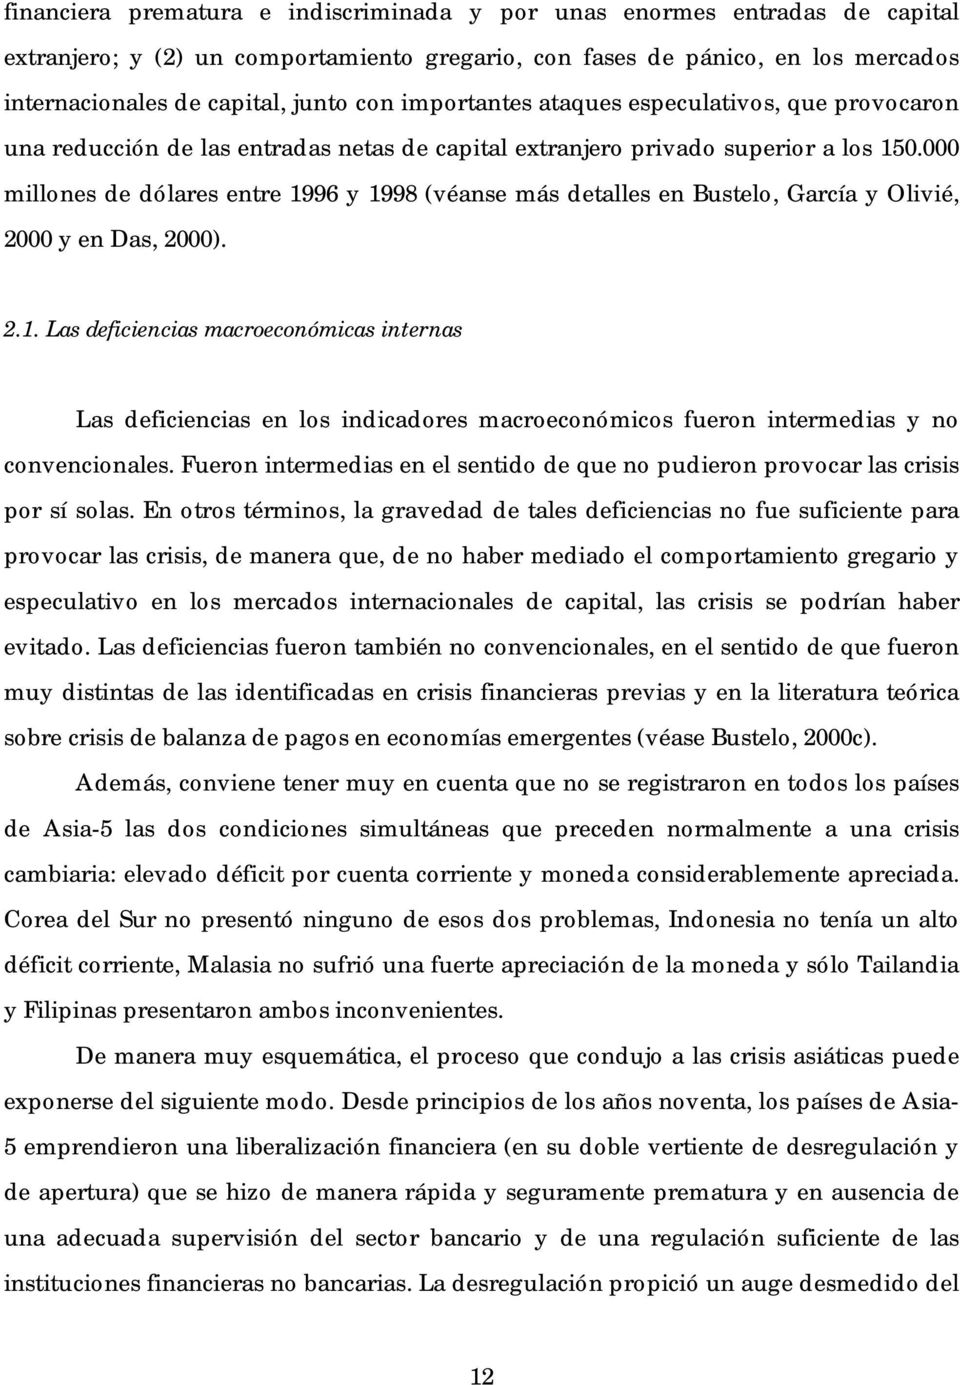 000 millones de dólares entre 1996 y 1998 (véanse más detalles en Bustelo, García y Olivié, 2000 y en Das, 2000). 2.1. Las deficiencias macroeconómicas internas Las deficiencias en los indicadores macroeconómicos fueron intermedias y no convencionales.